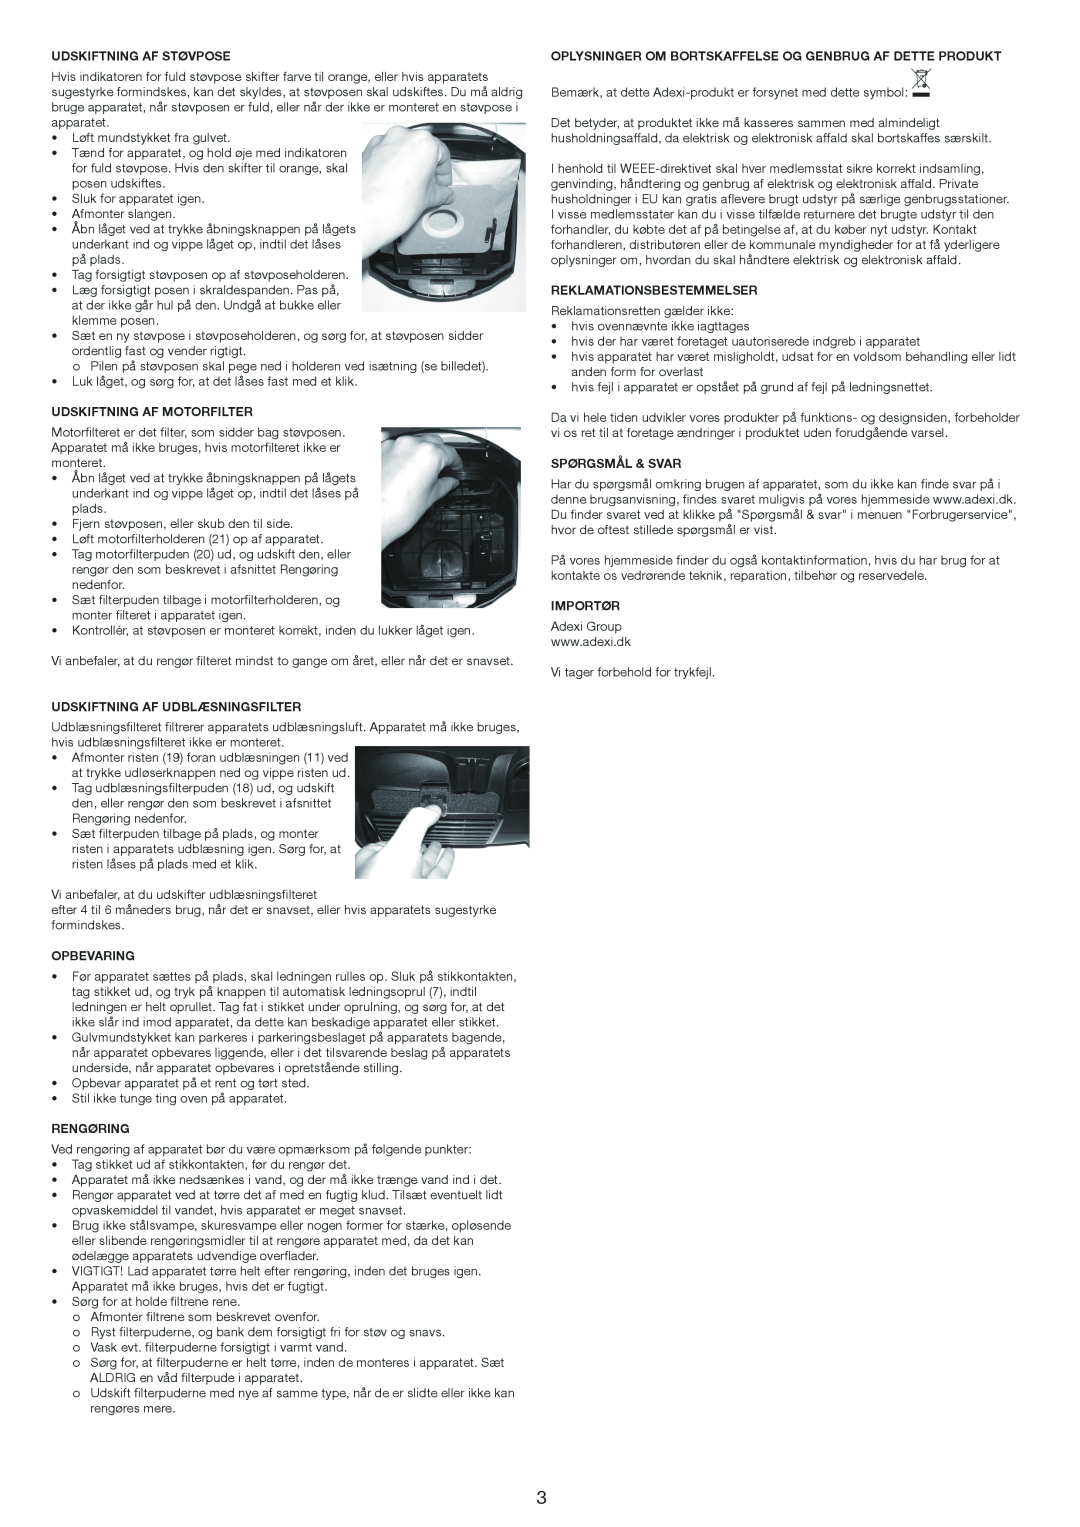 Melissa 640-171 manual Udskiftning Af Støvpose, Udskiftning Af Motorfilter, Udskiftning Af Udblæsningsfilter, Opbevaring 